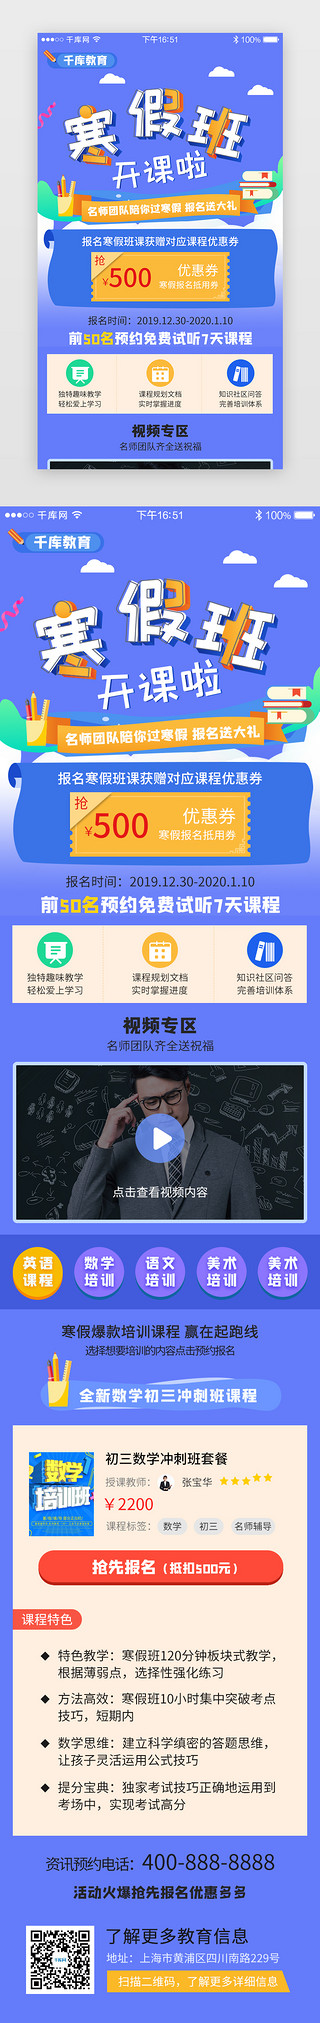 培训教育展板UI设计素材_蓝色系app寒假培训教育H5